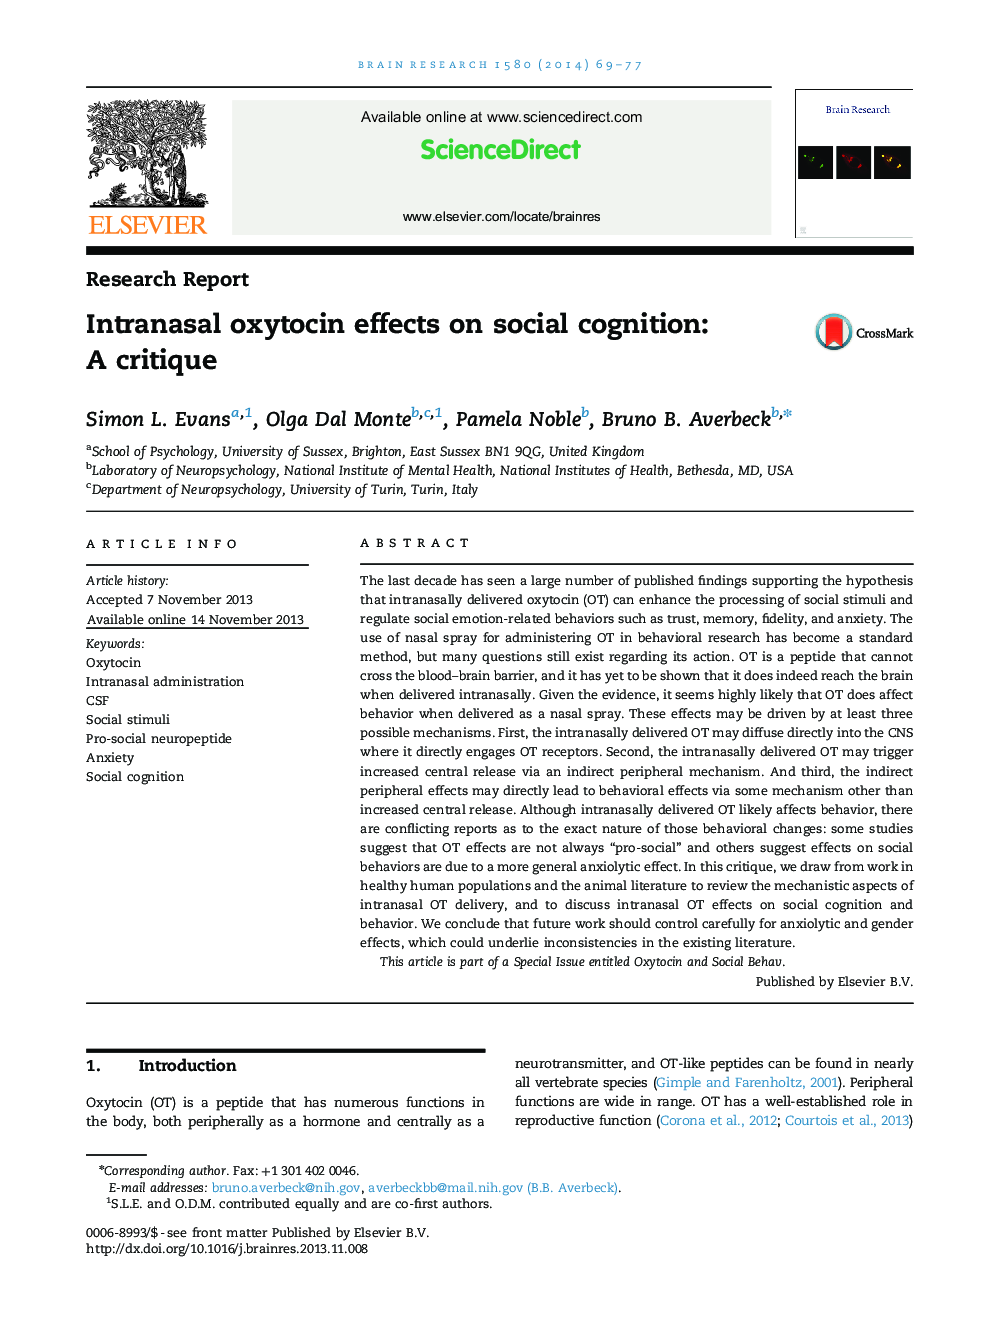 Intranasal oxytocin effects on social cognition: A critique